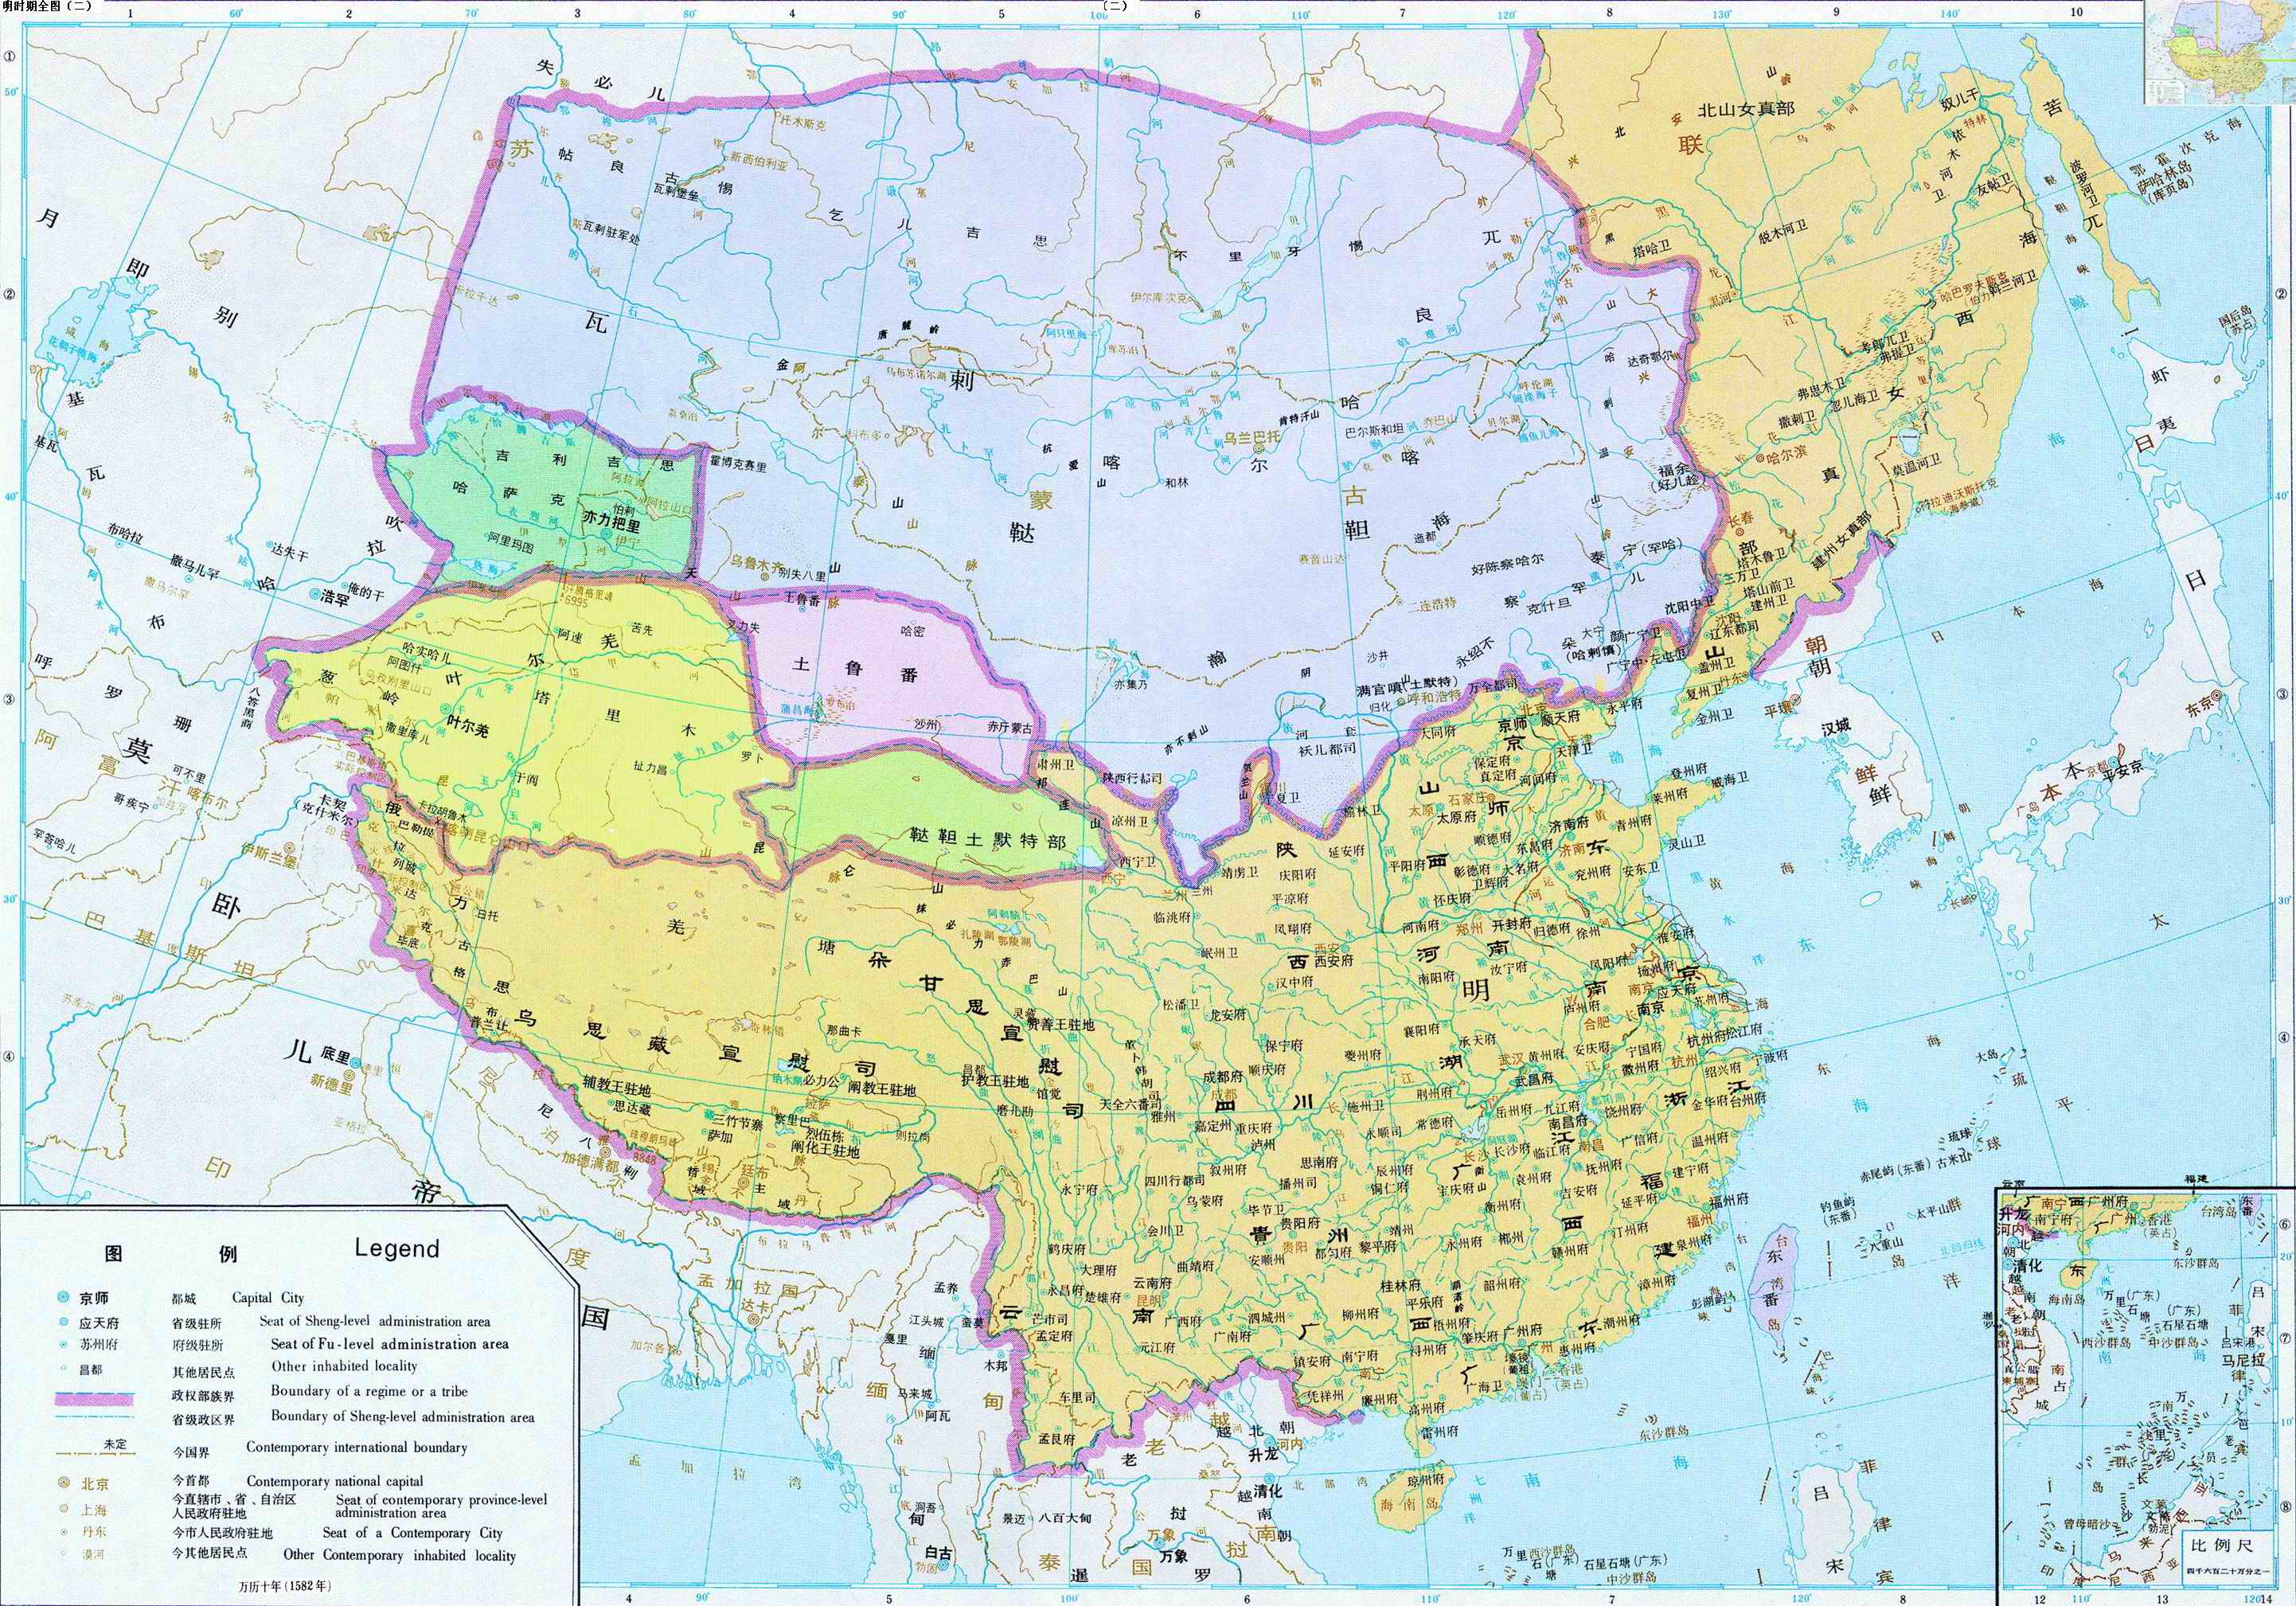 中国历朝历代地图(供寻根联谊之用)